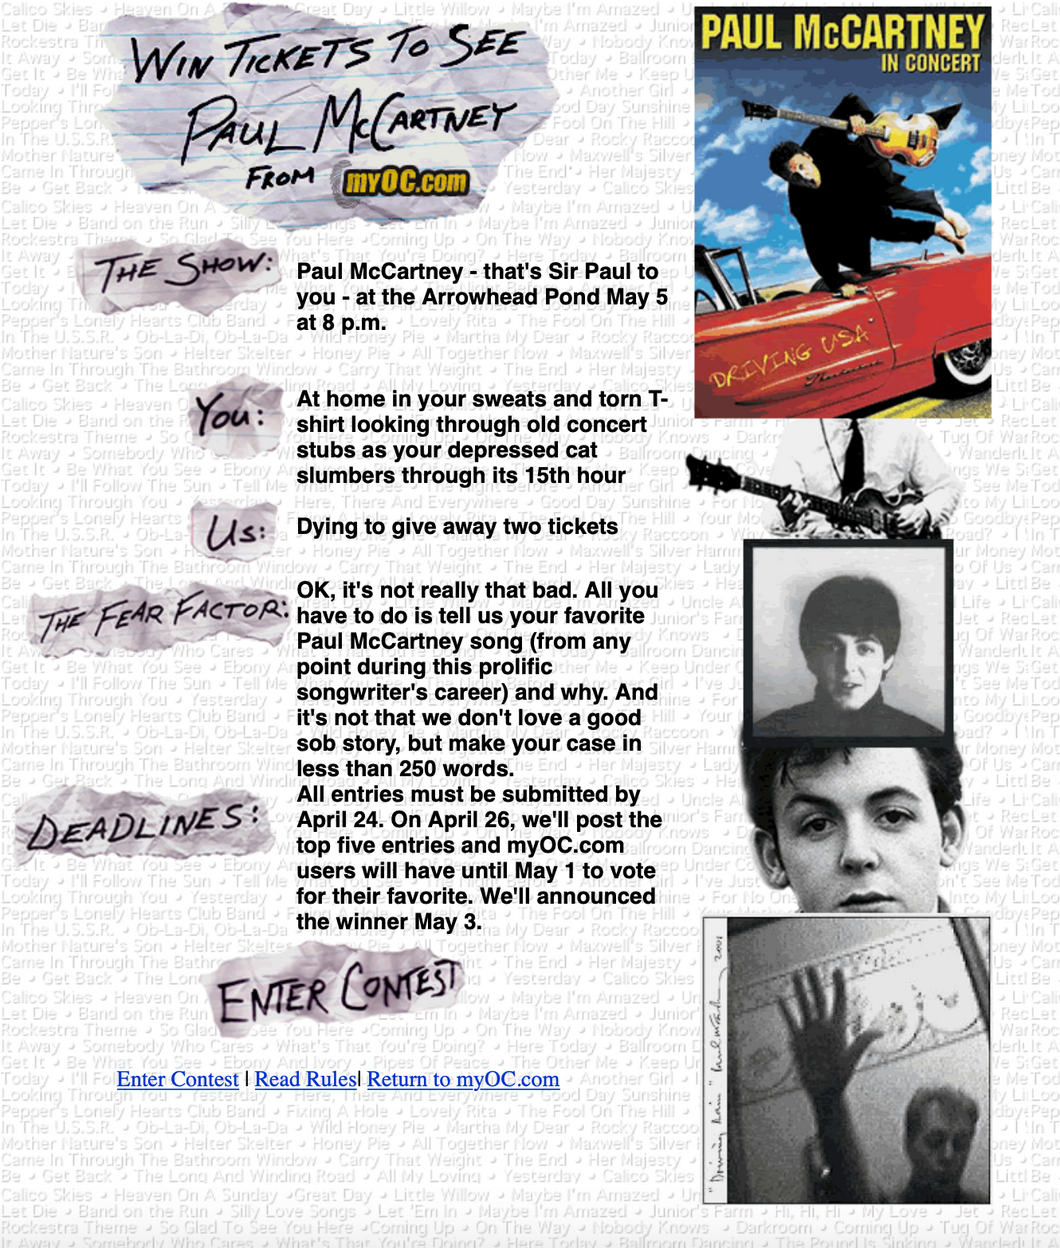 Paul McCartney Ticket Contest - Contest Design